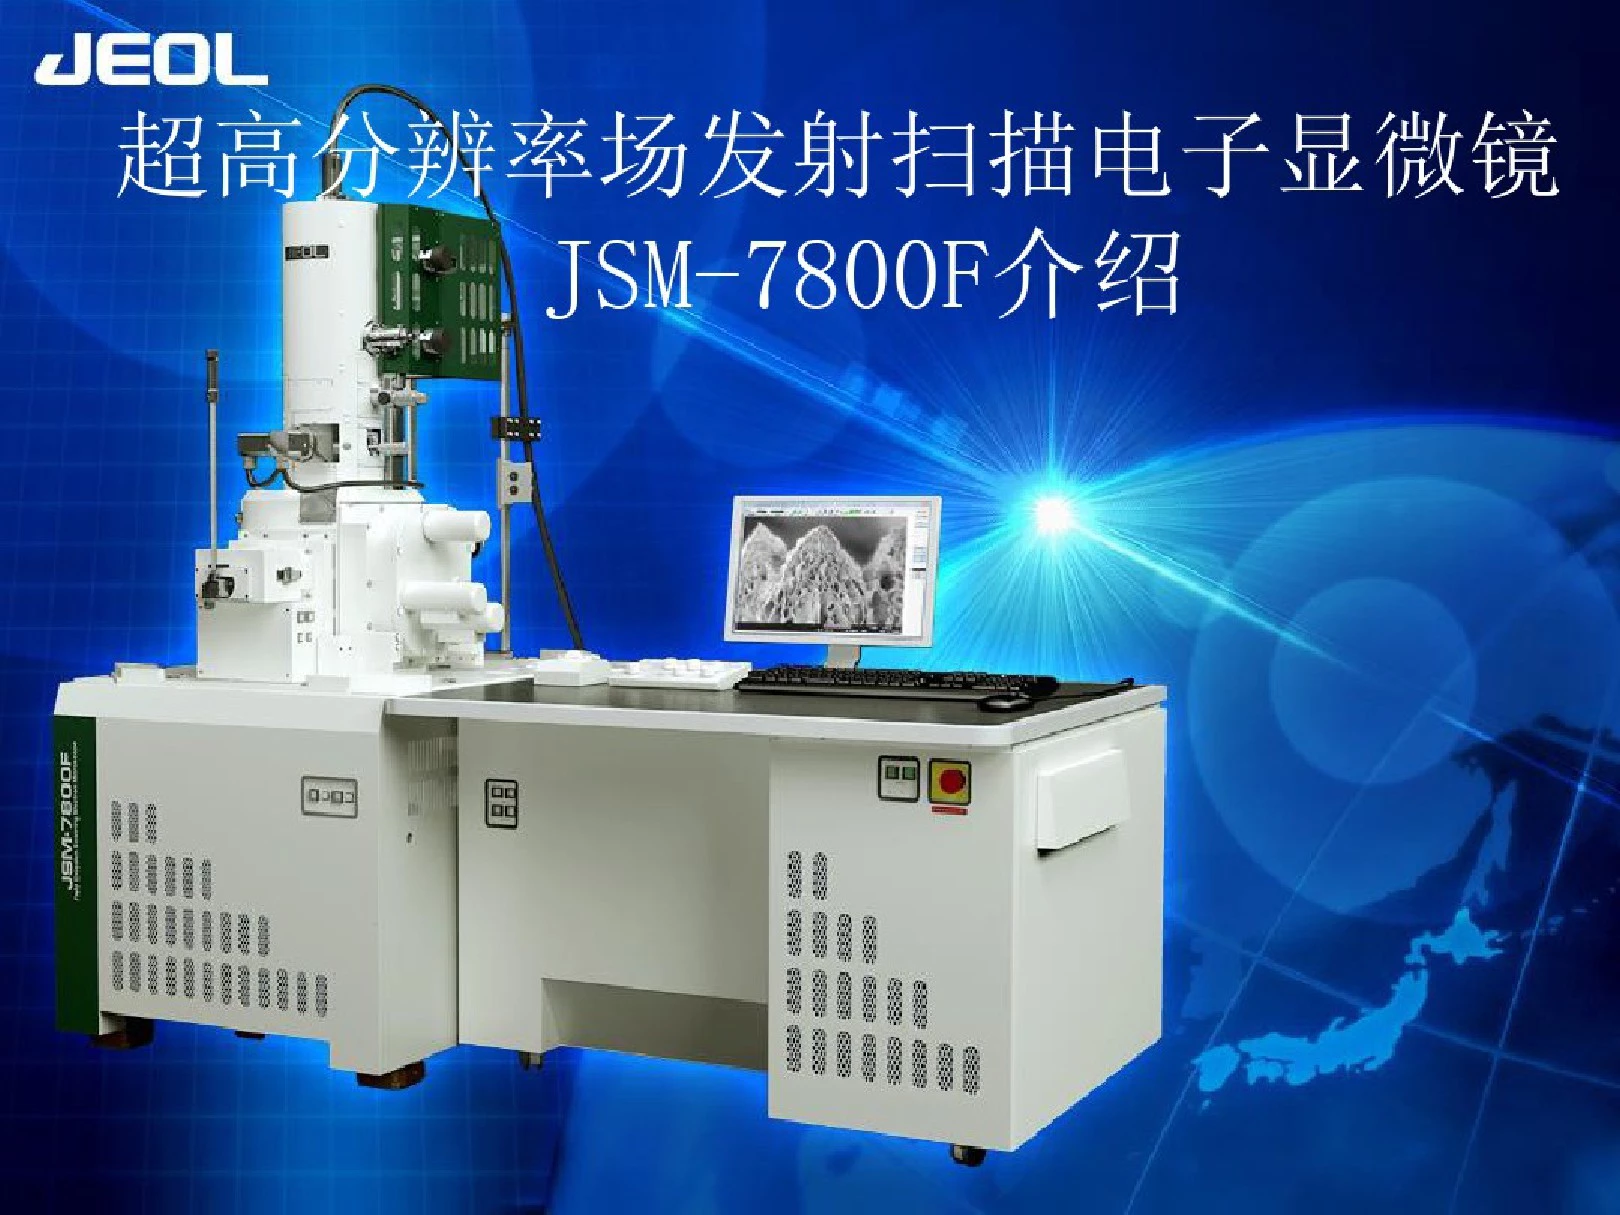 超高分辨率场发射扫描电子显微镜JSM-7800F介绍课件(0618115539)